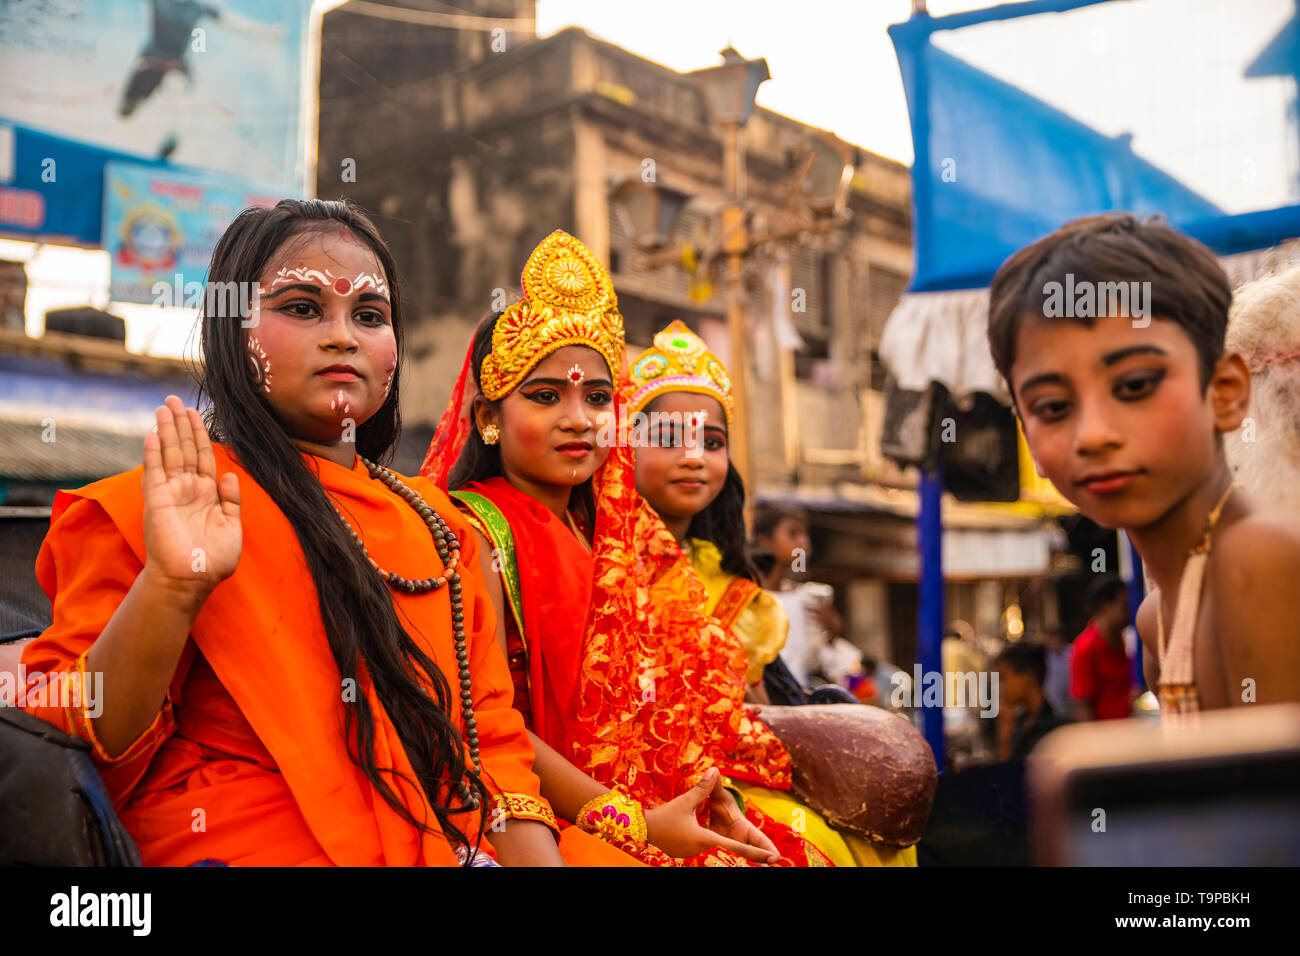 La fin de l'année,bengali,temple Kalighat,procession de ,la Divine ,figurines, historiques,entités maring,adoption,d'un an,Kolkata, Inde. Banque D'Images